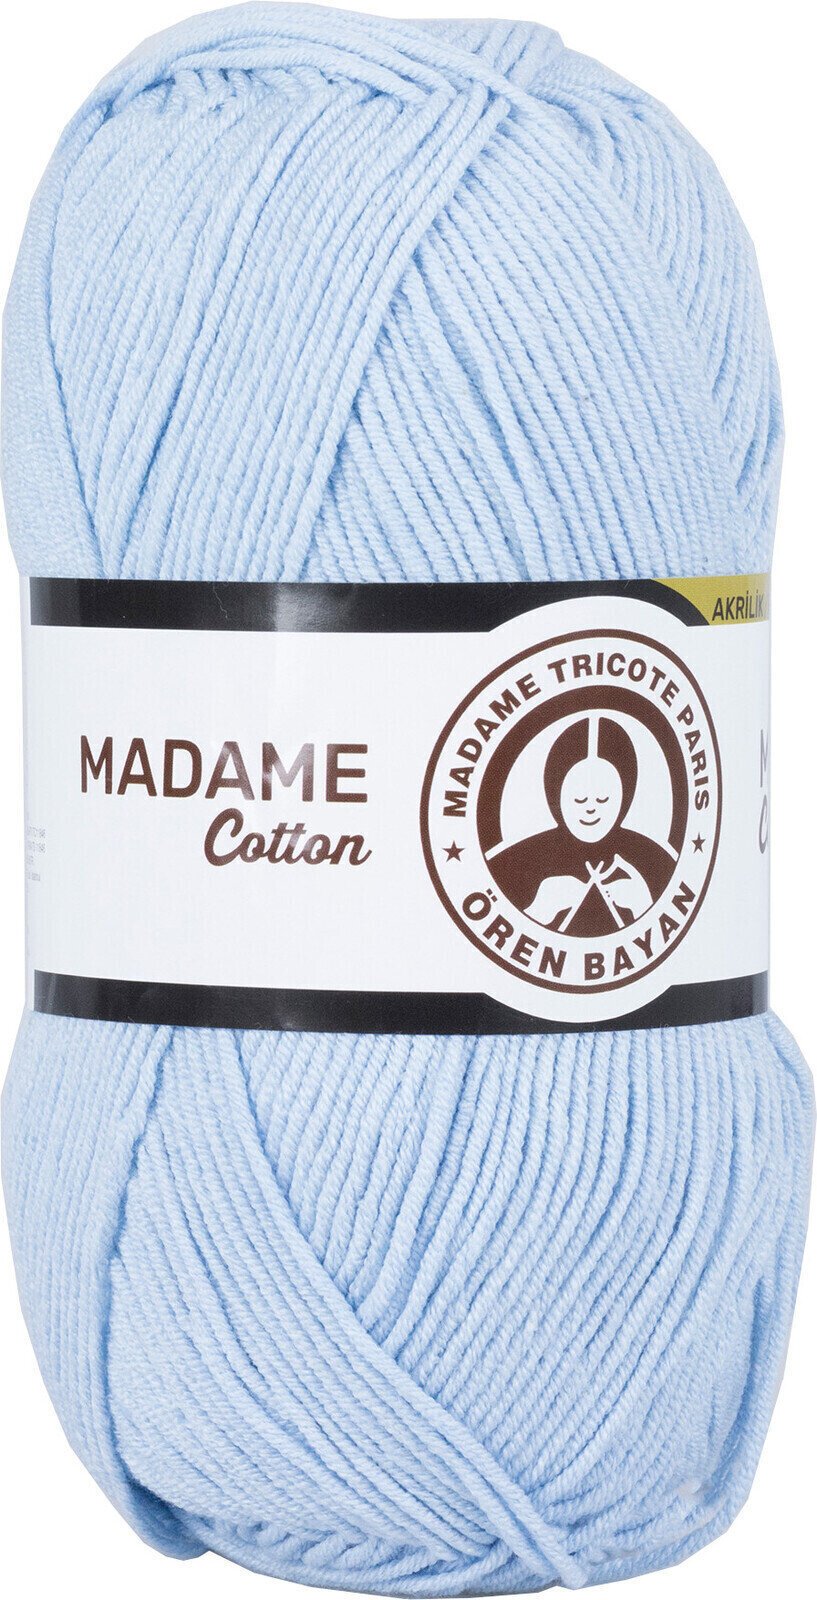 Fire de tricotat Madame Tricote Paris Madame Cotton 014 Light Blue